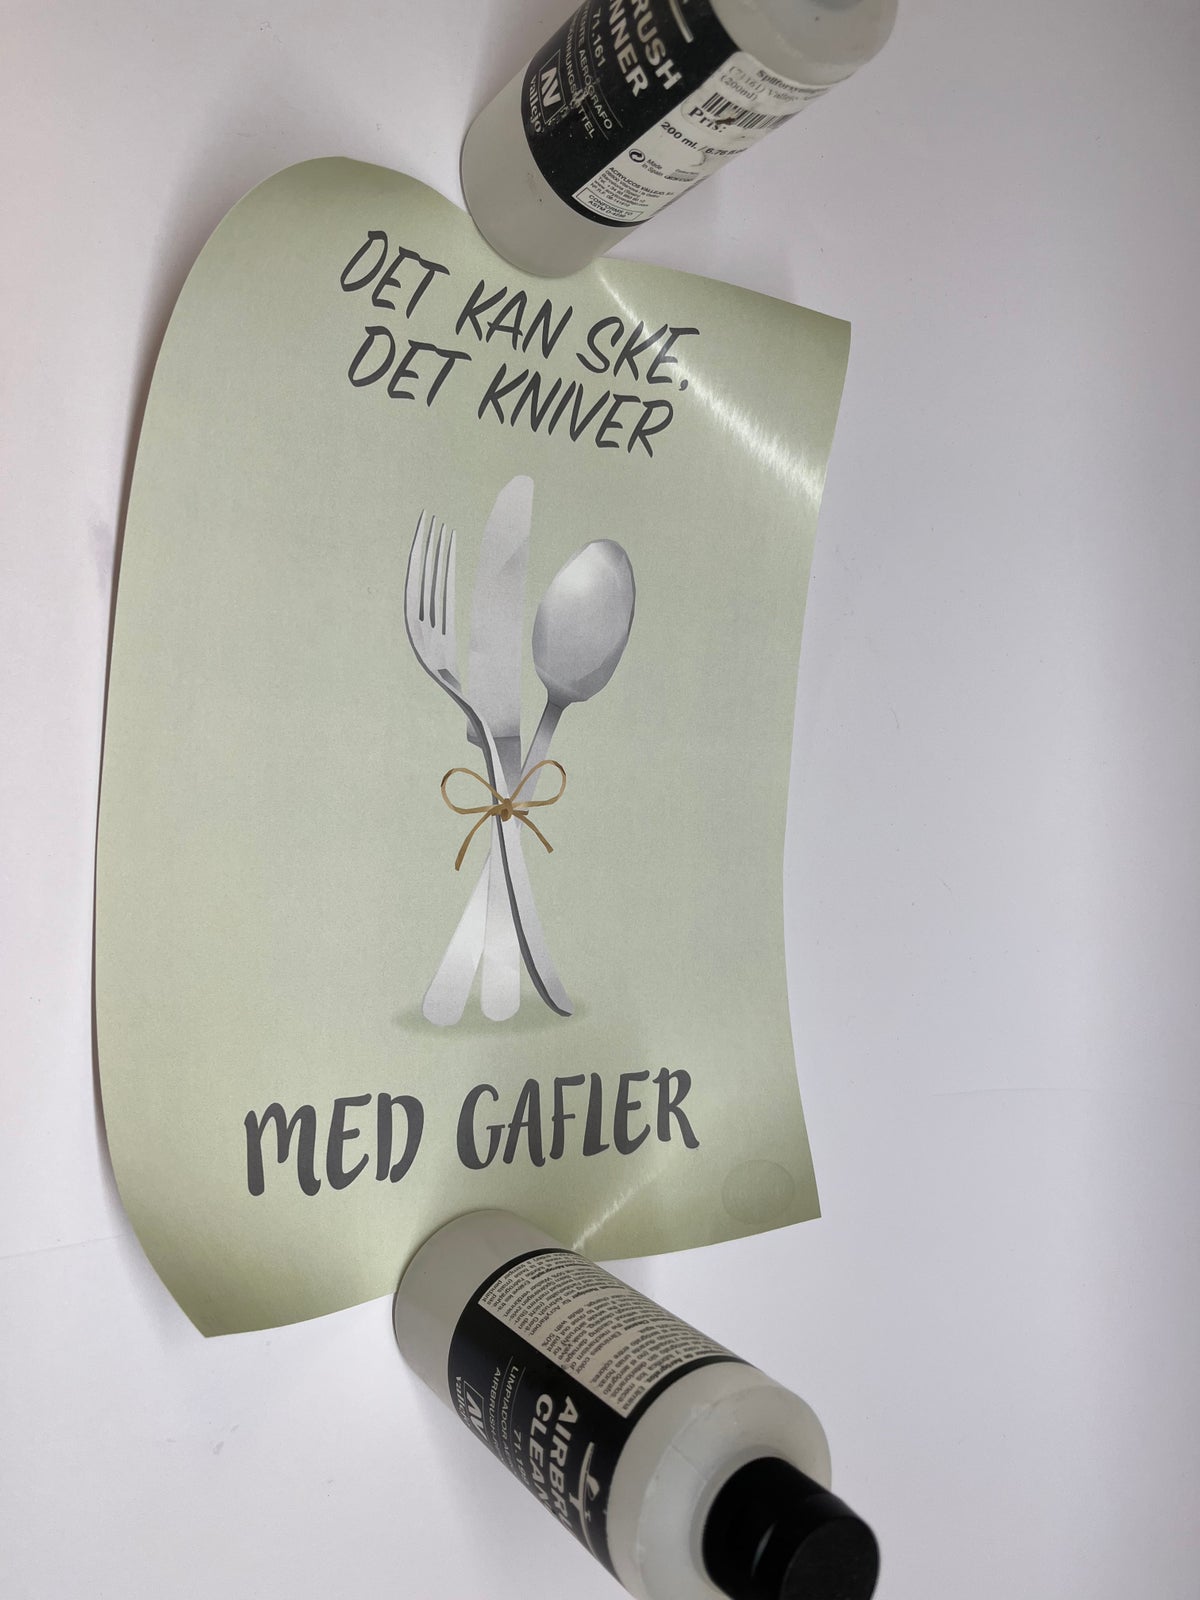 dreng klima Bermad Plakat, Hipd, motiv: Det kan ske at det kniver med gafler – dba.dk – Køb og  Salg af Nyt og Brugt